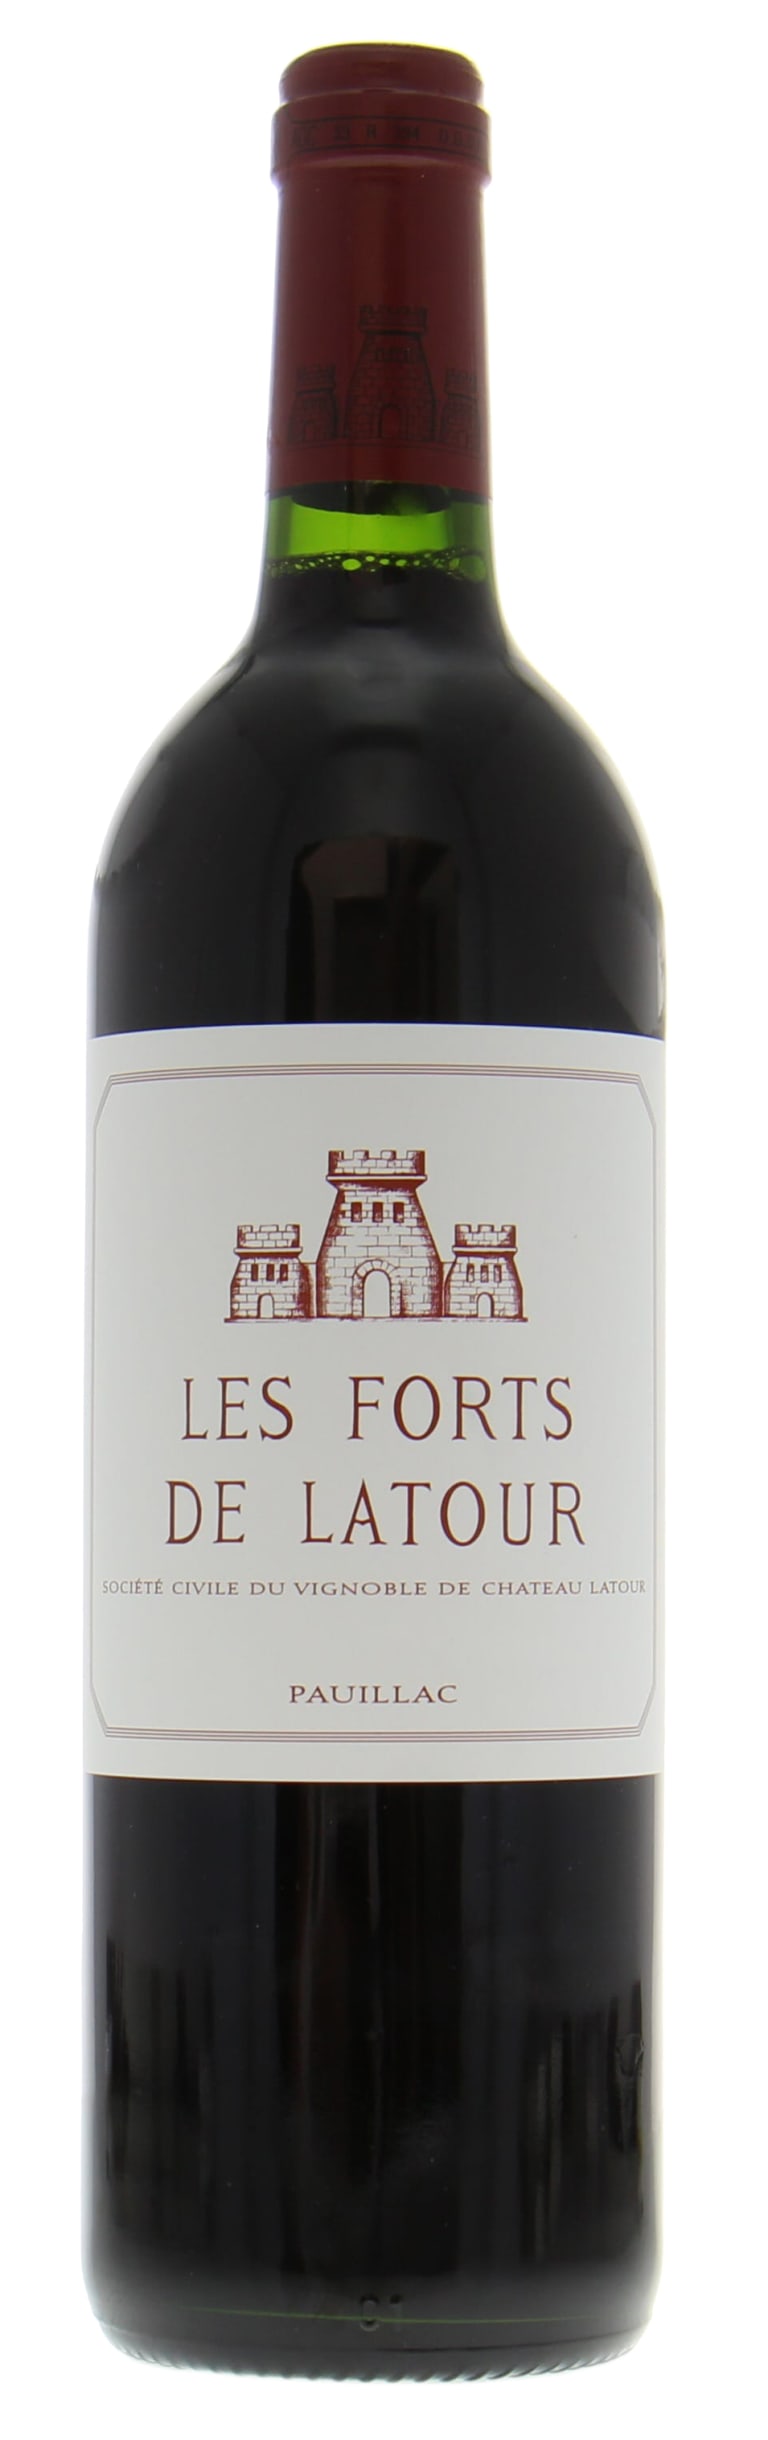 Château Latour Les Forts de Latour Pauillac 2016